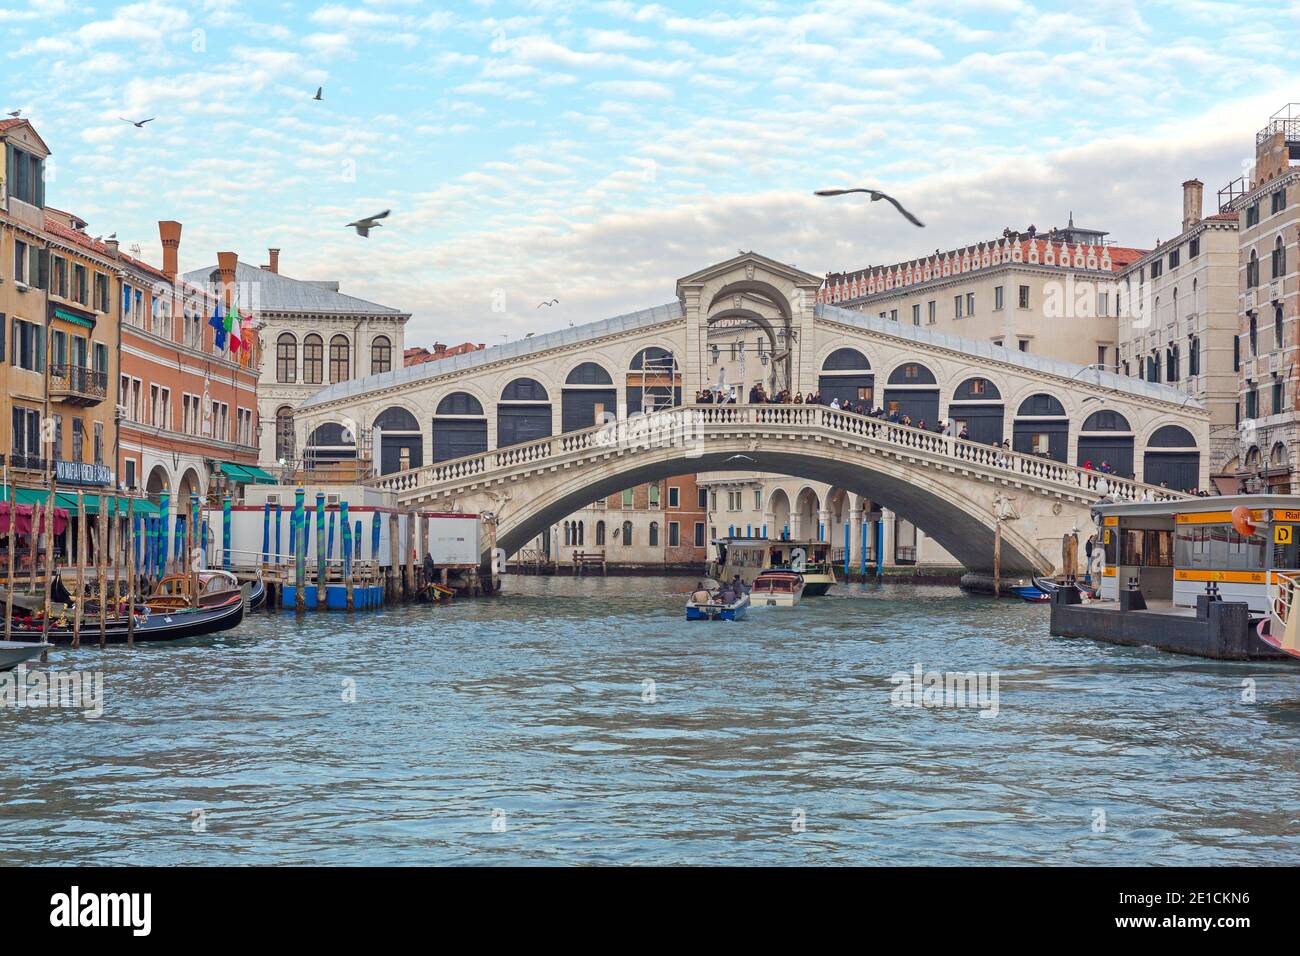 Venise, Italie - 9 janvier 2017 : Tourist Atratraction Rialto Bridge over Grand Canal at Winter à Venise, Italie. Banque D'Images